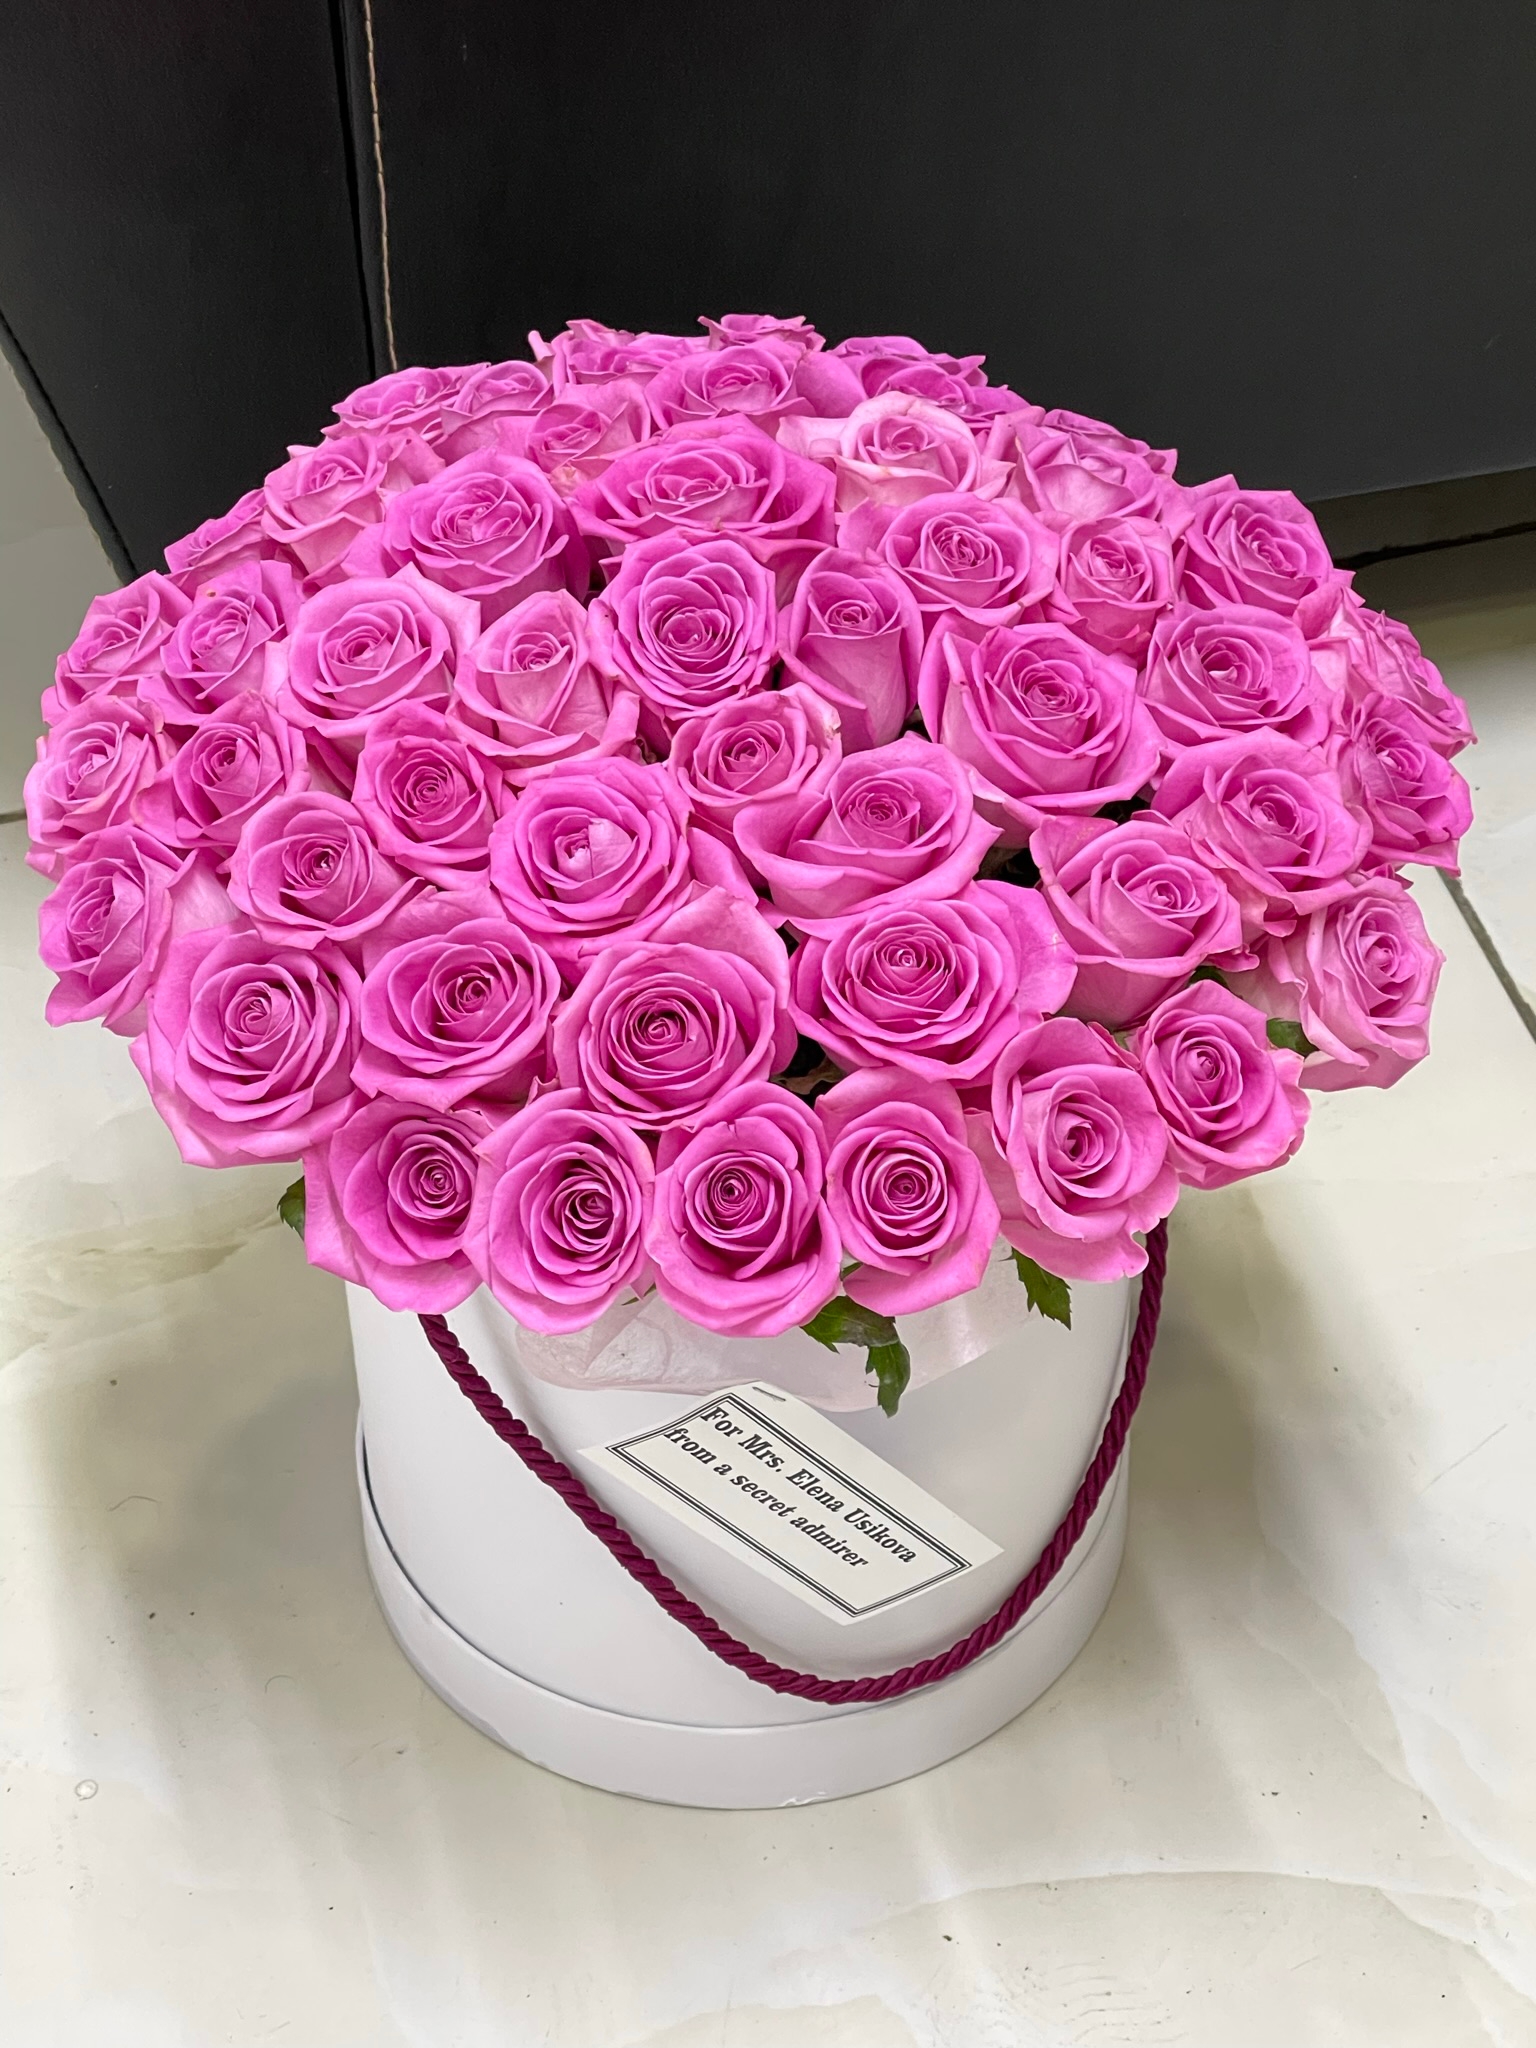  Kemer Blumen 51 Pcs Pink Roses in a White Box